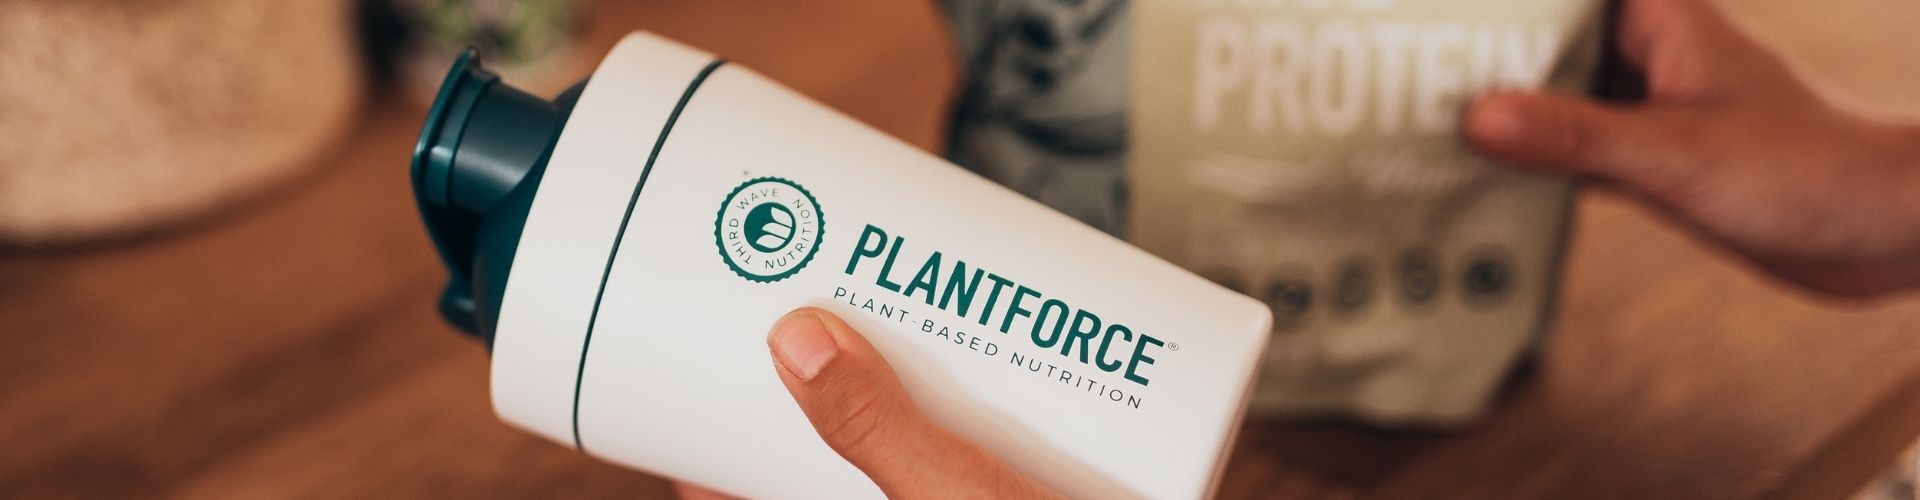 vegan supplements plantforce